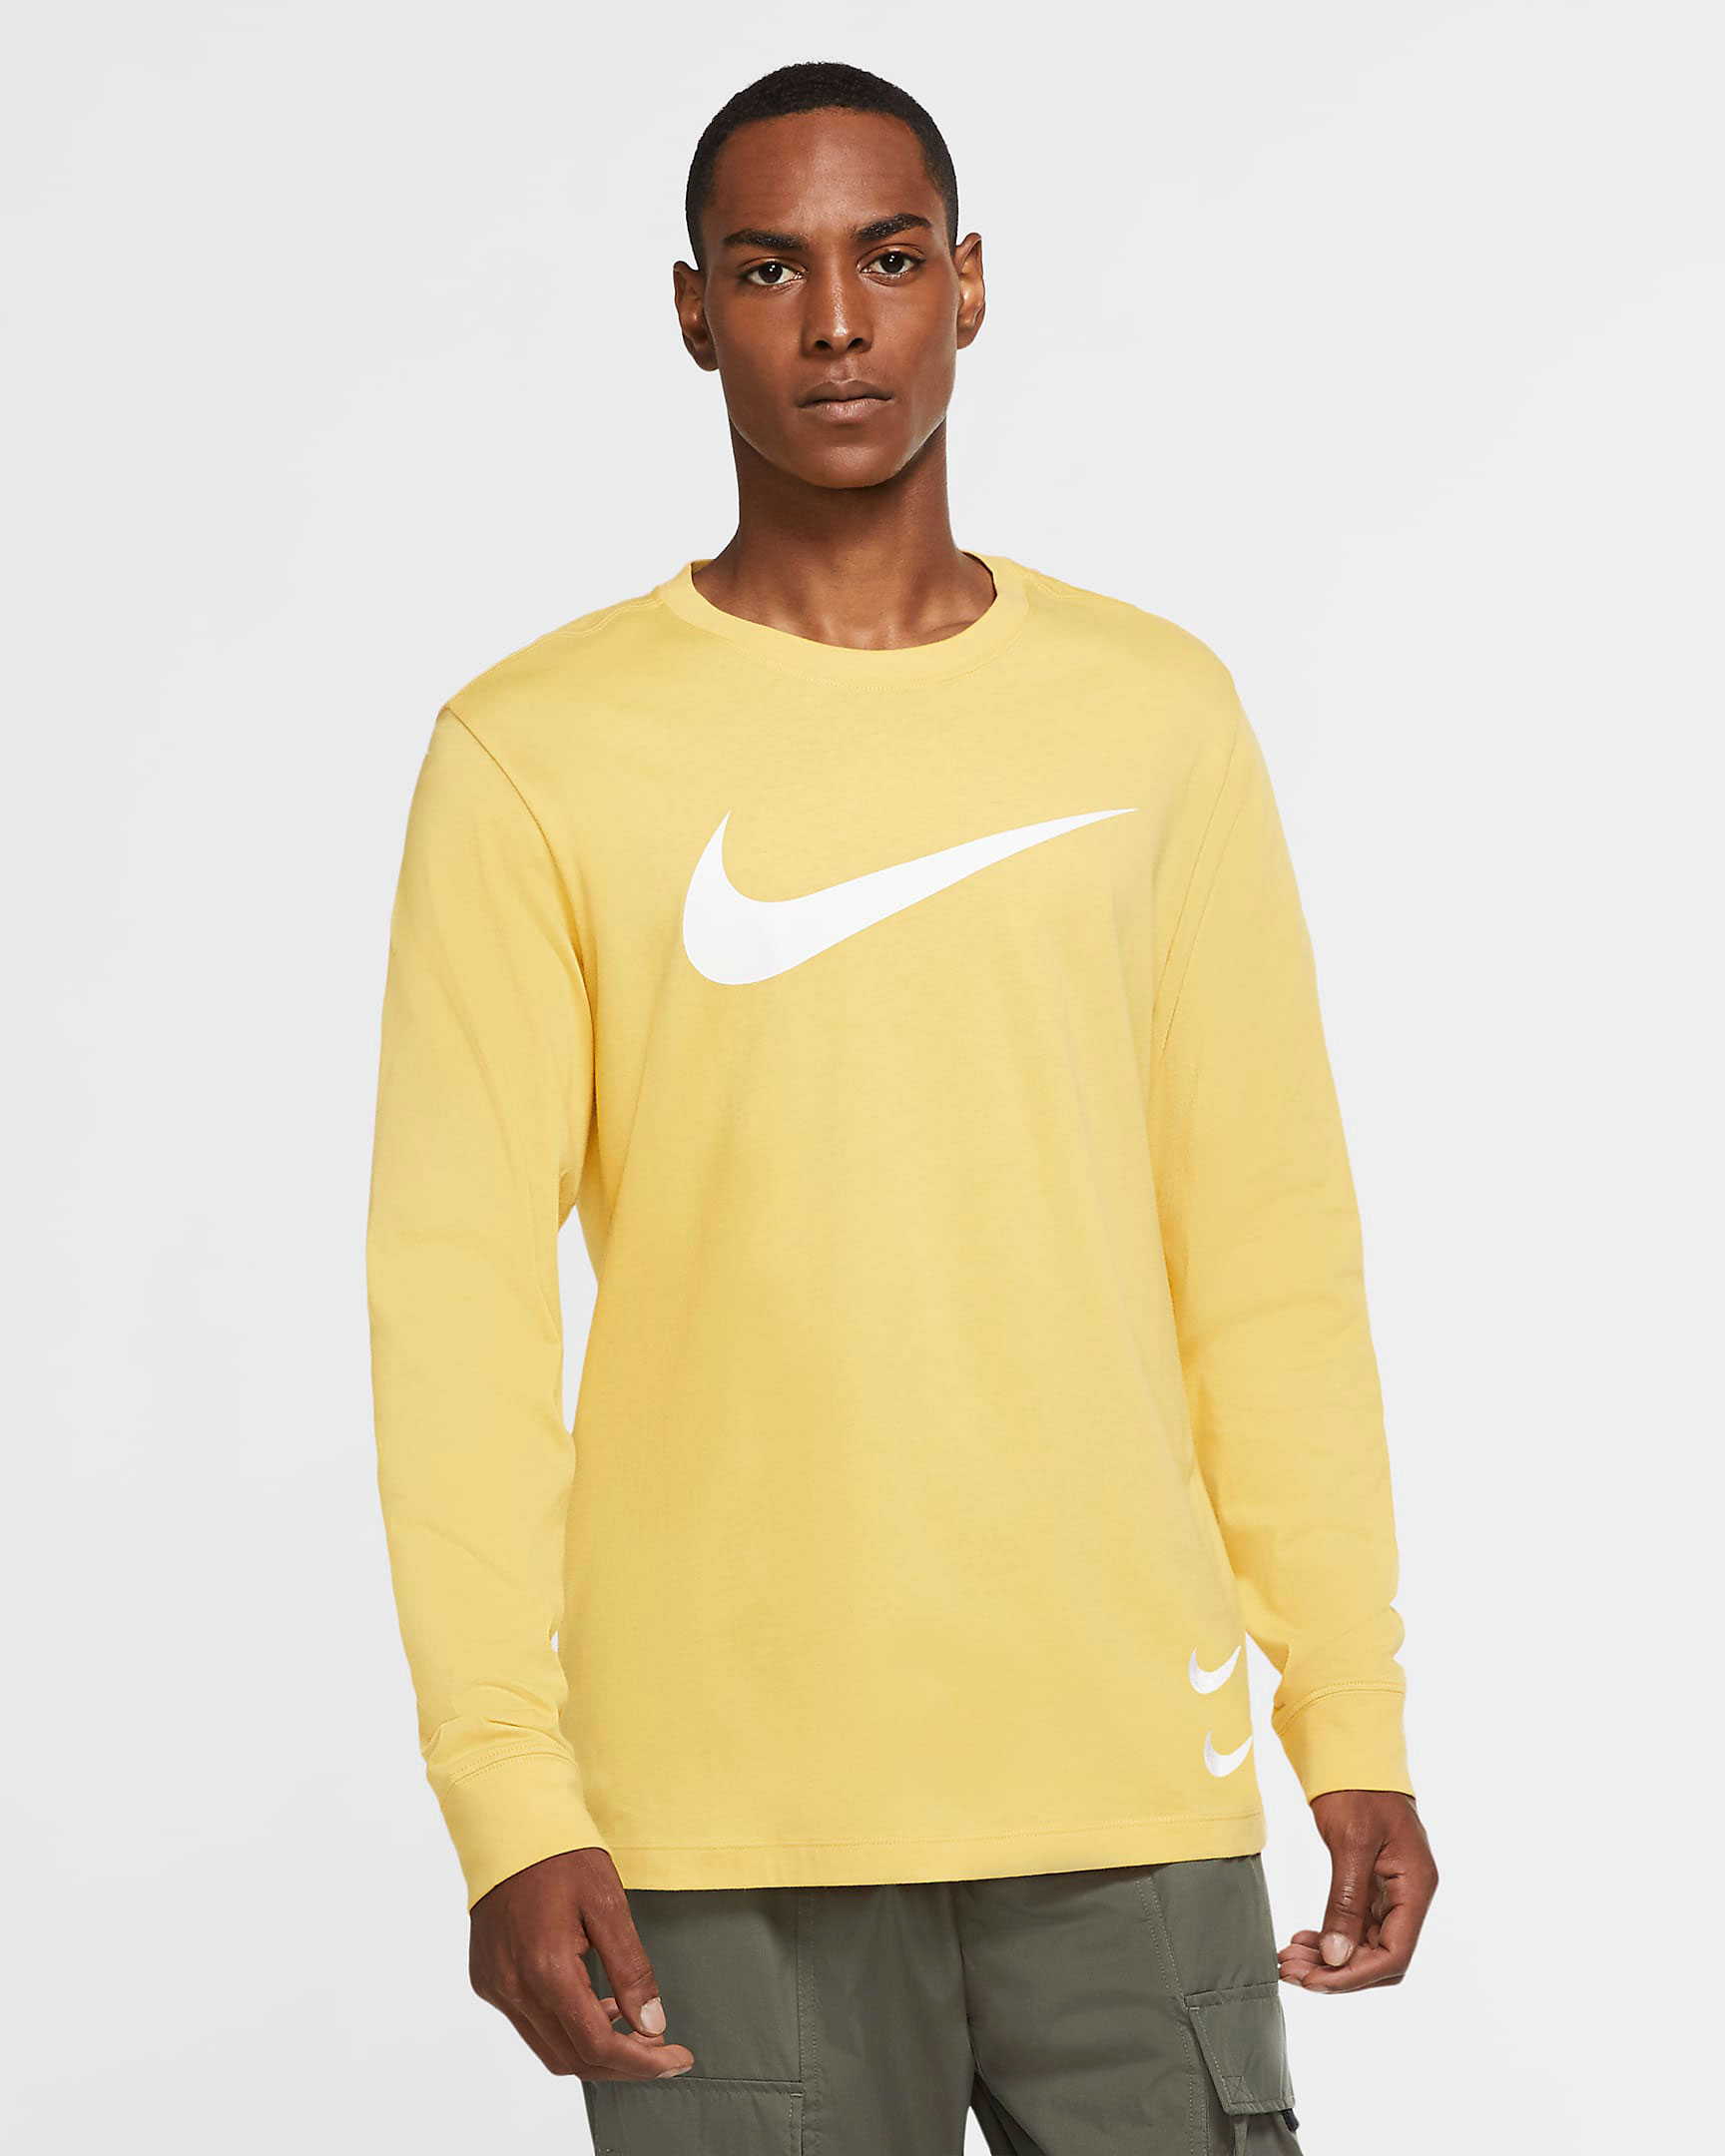 nike-air-max-1-lemonade-yellow-long-sleeve-shirt